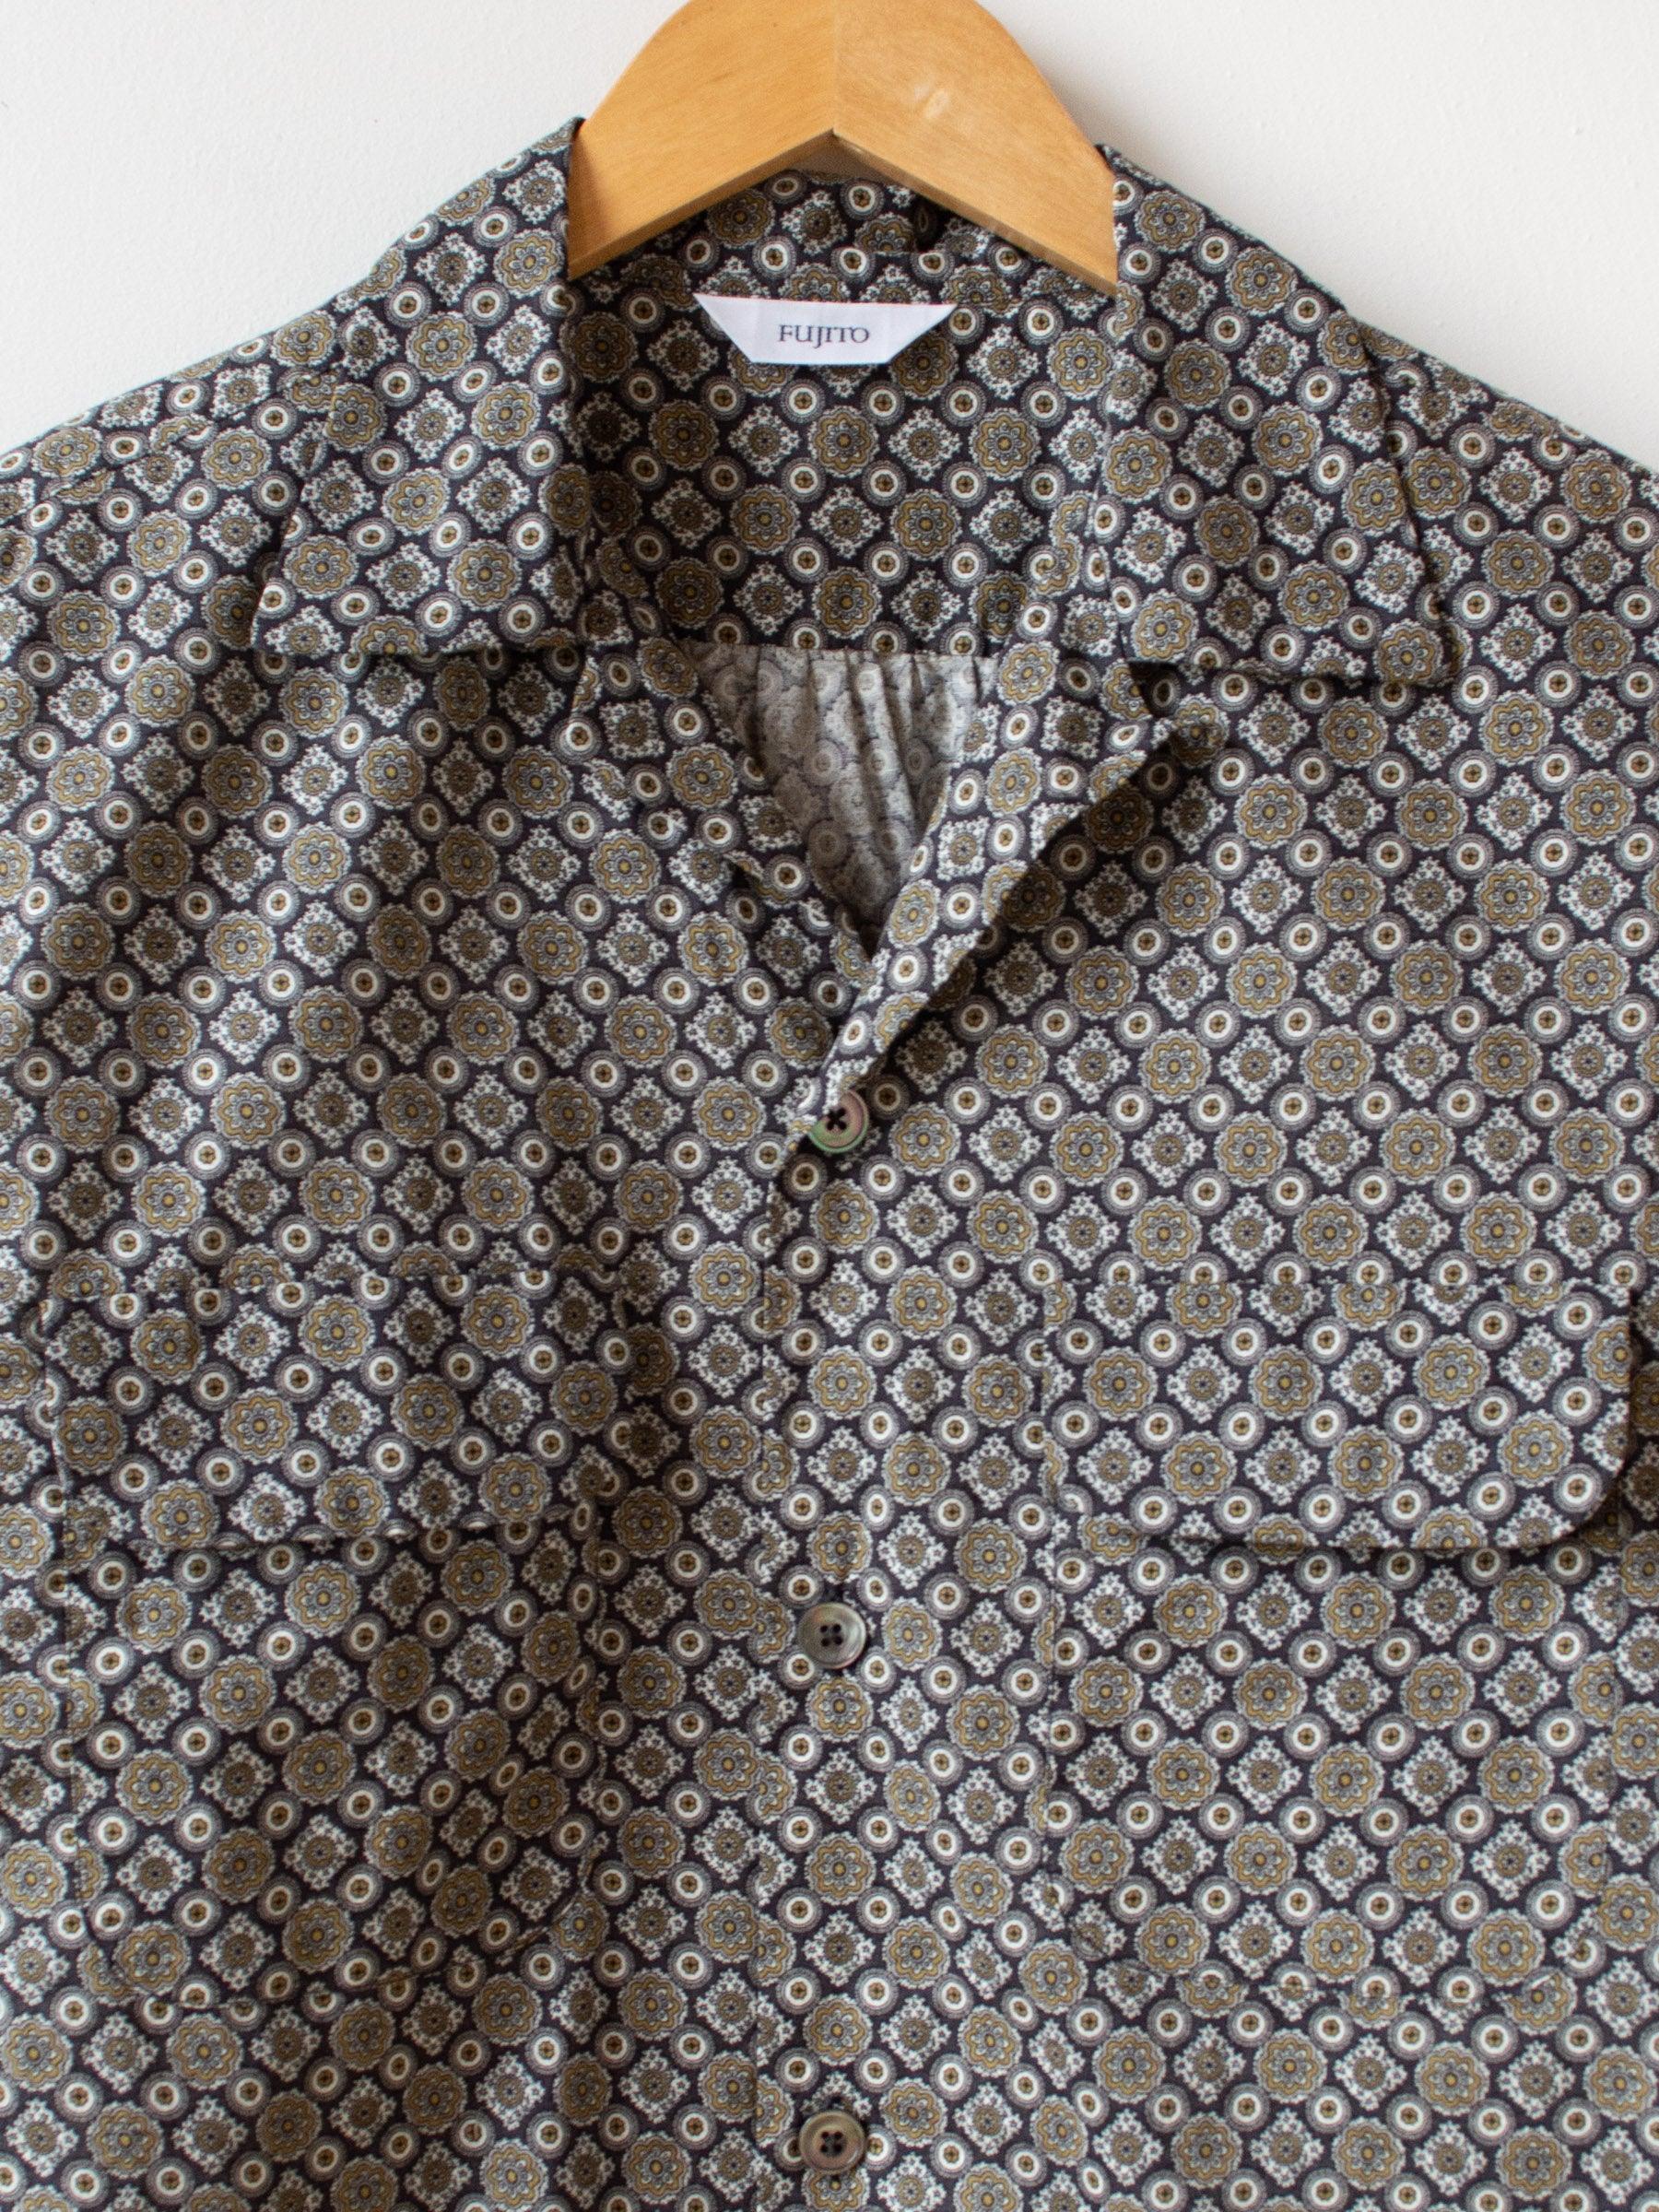 Namu Shop - Fujito Open Collar shirt - Charcoal